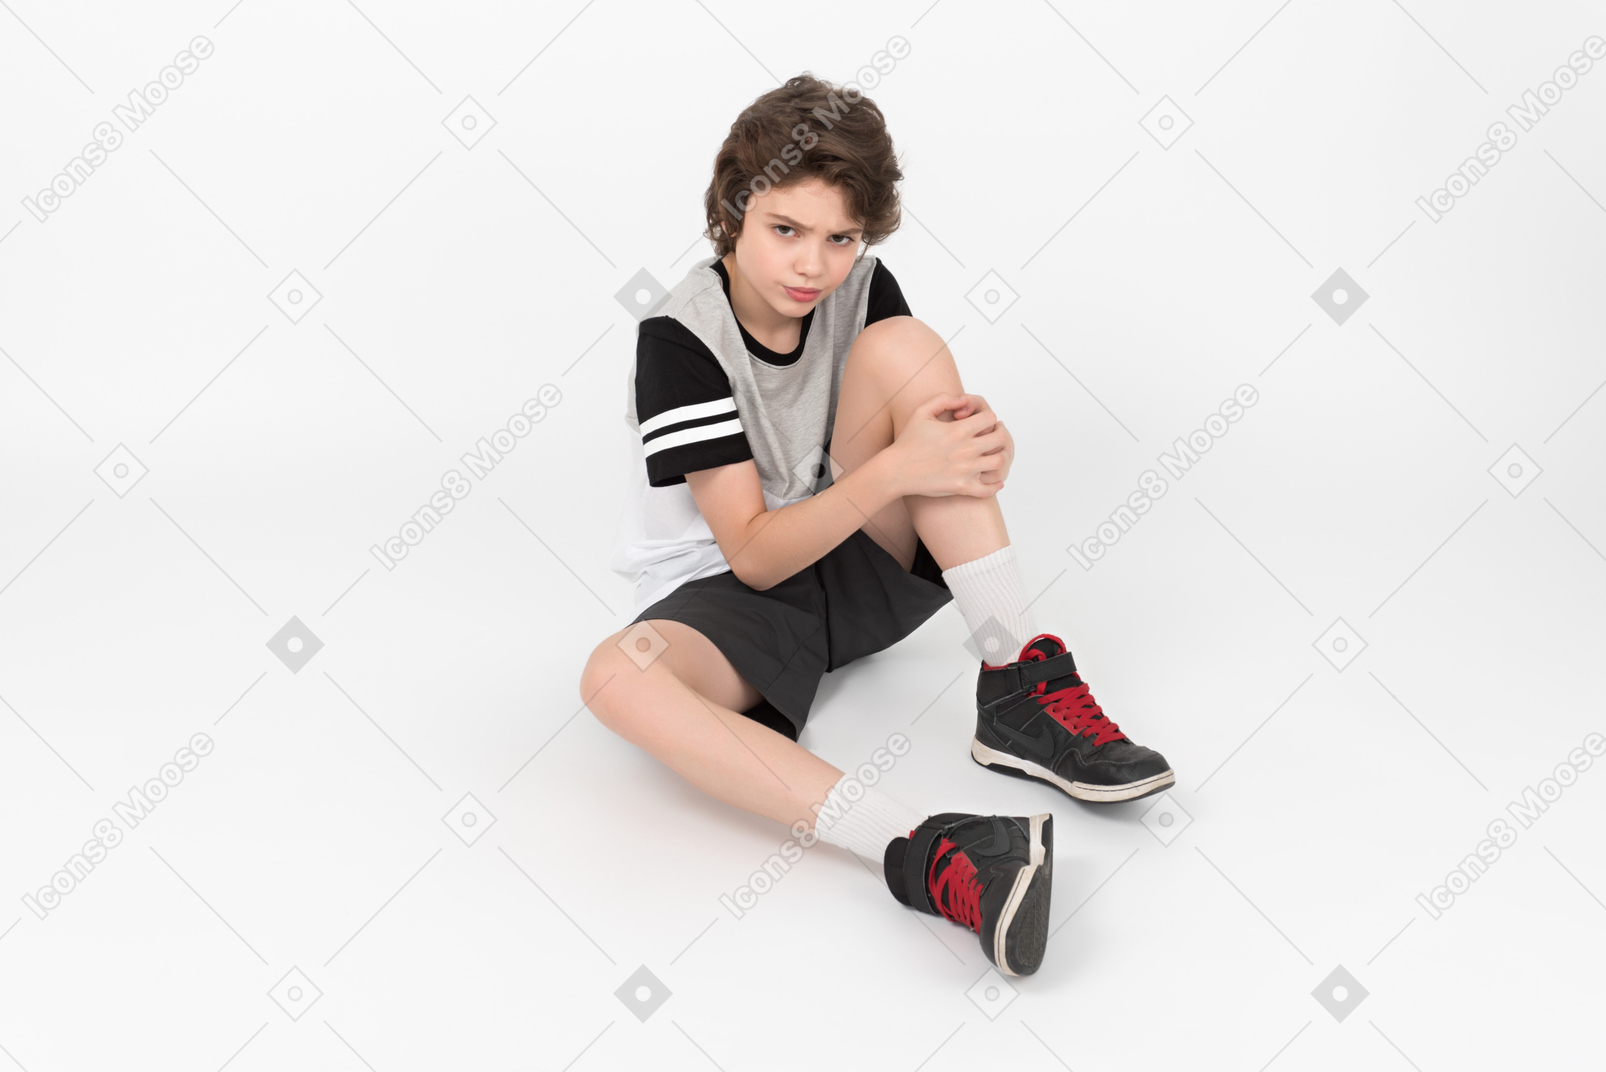 Garçon athlétique grincheux est assis sur le sol et touche sa jambe